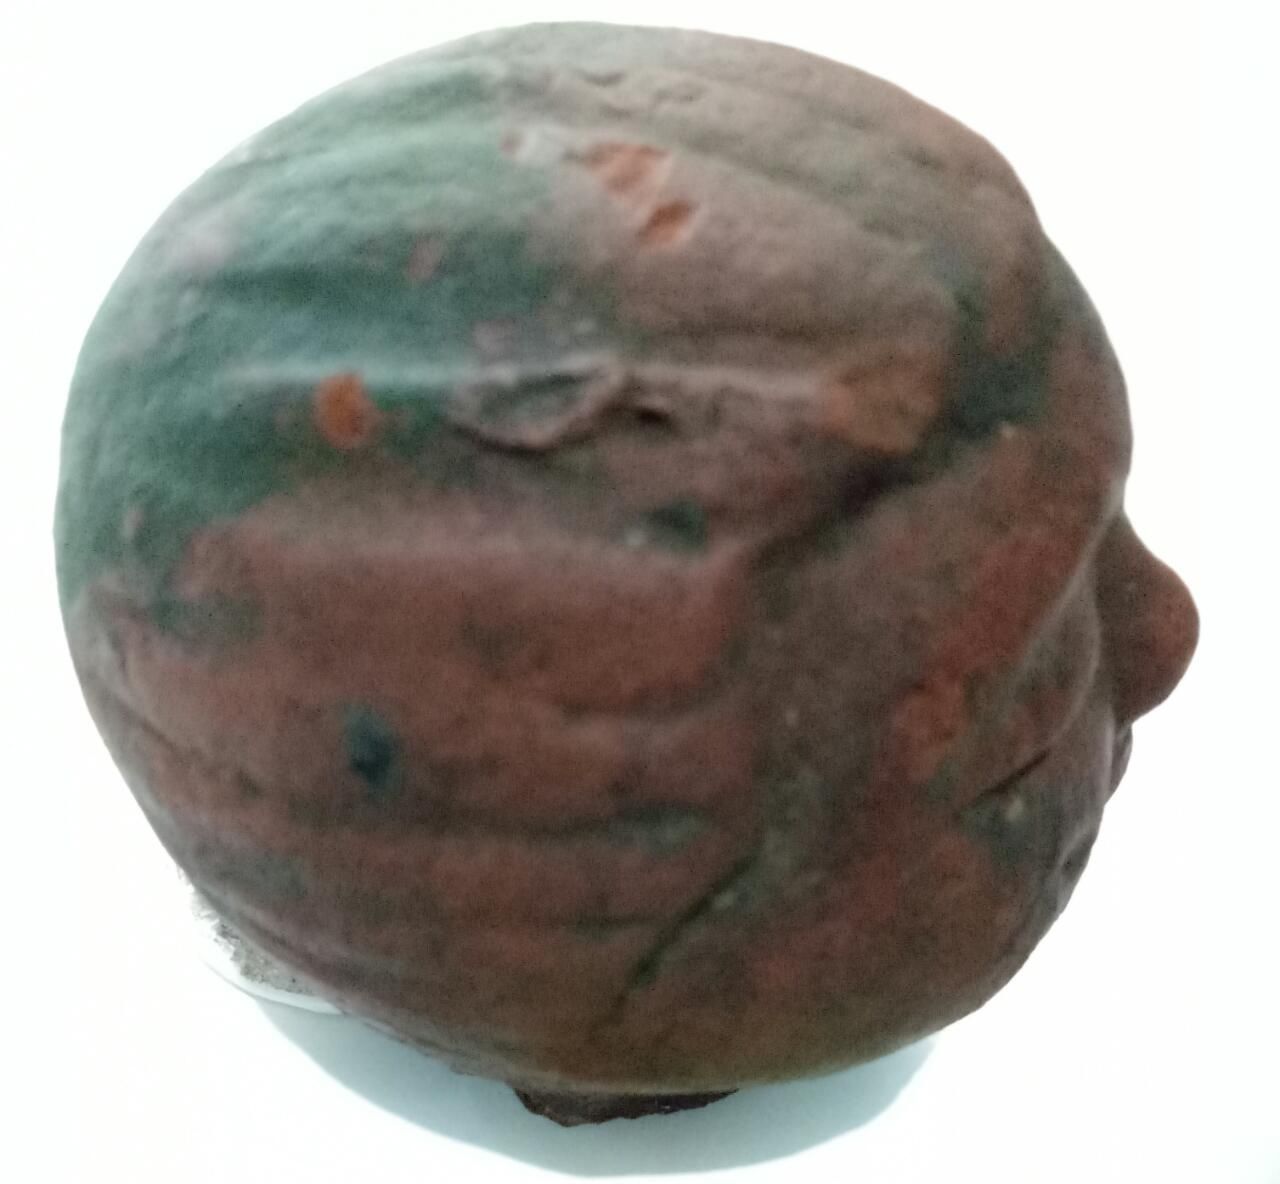 Bentuk samping terakota berbentuk kepala manusia yang ditemukan di Desa Bagorejo Banyuwangi.*/